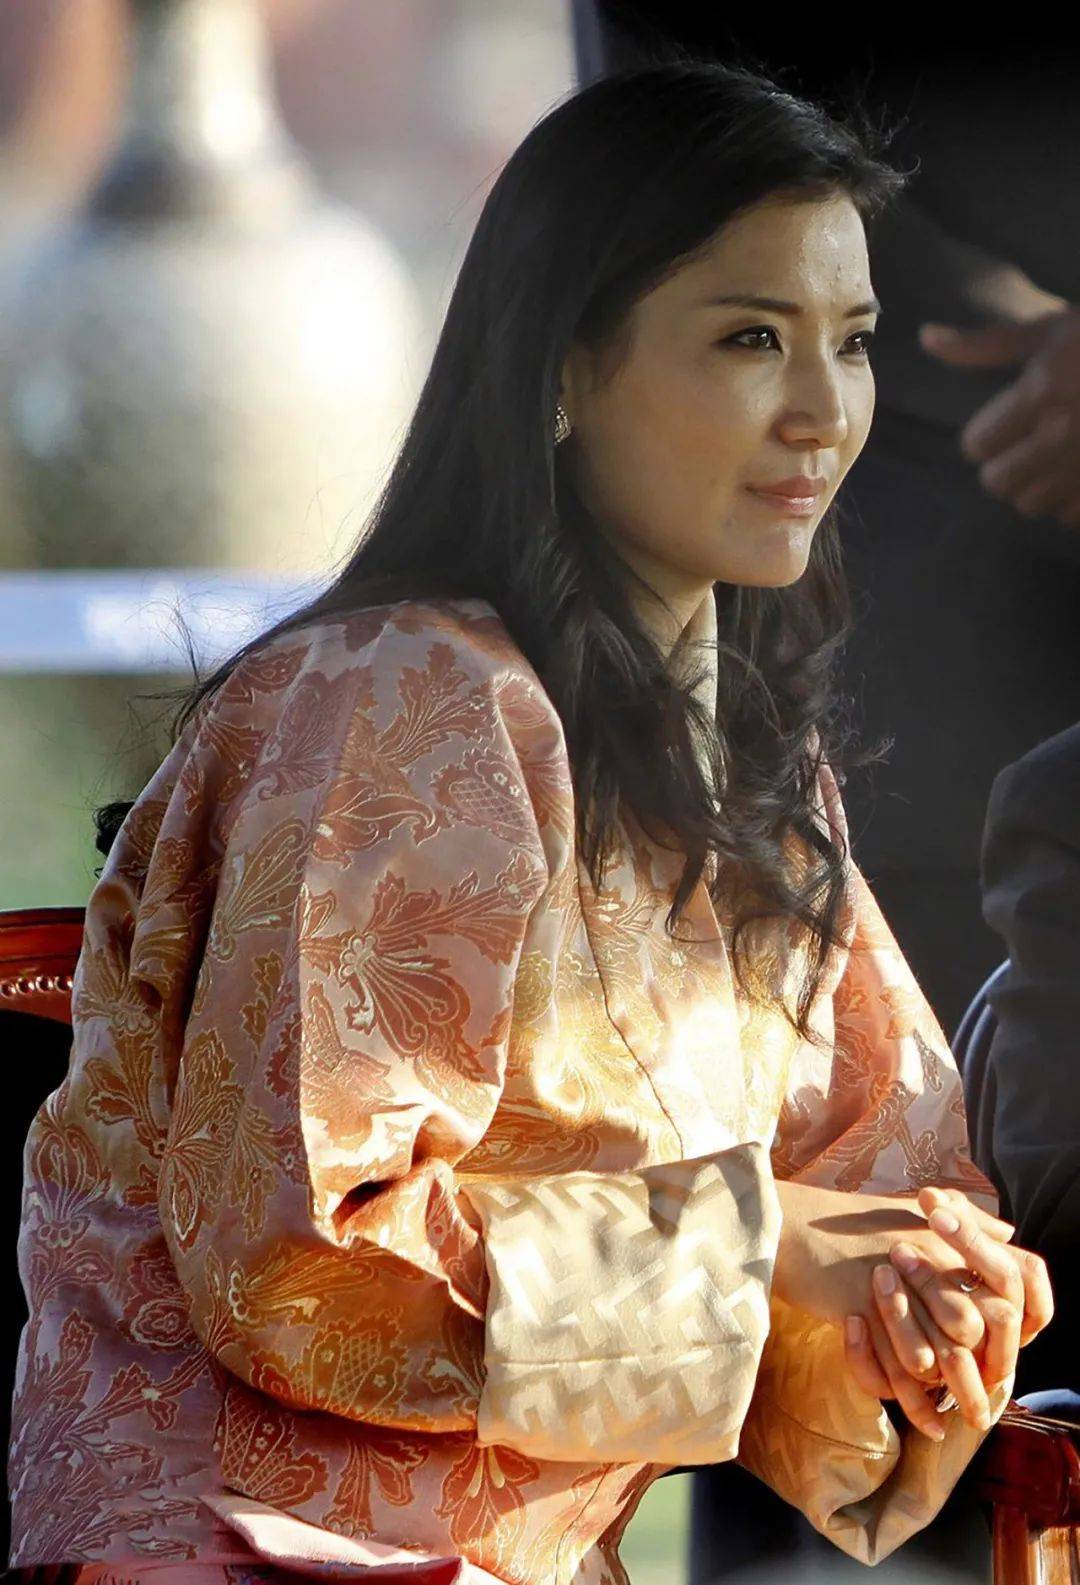 30岁不丹王后做客国外,独自抢先坐主人位,惹怒国王也不屑